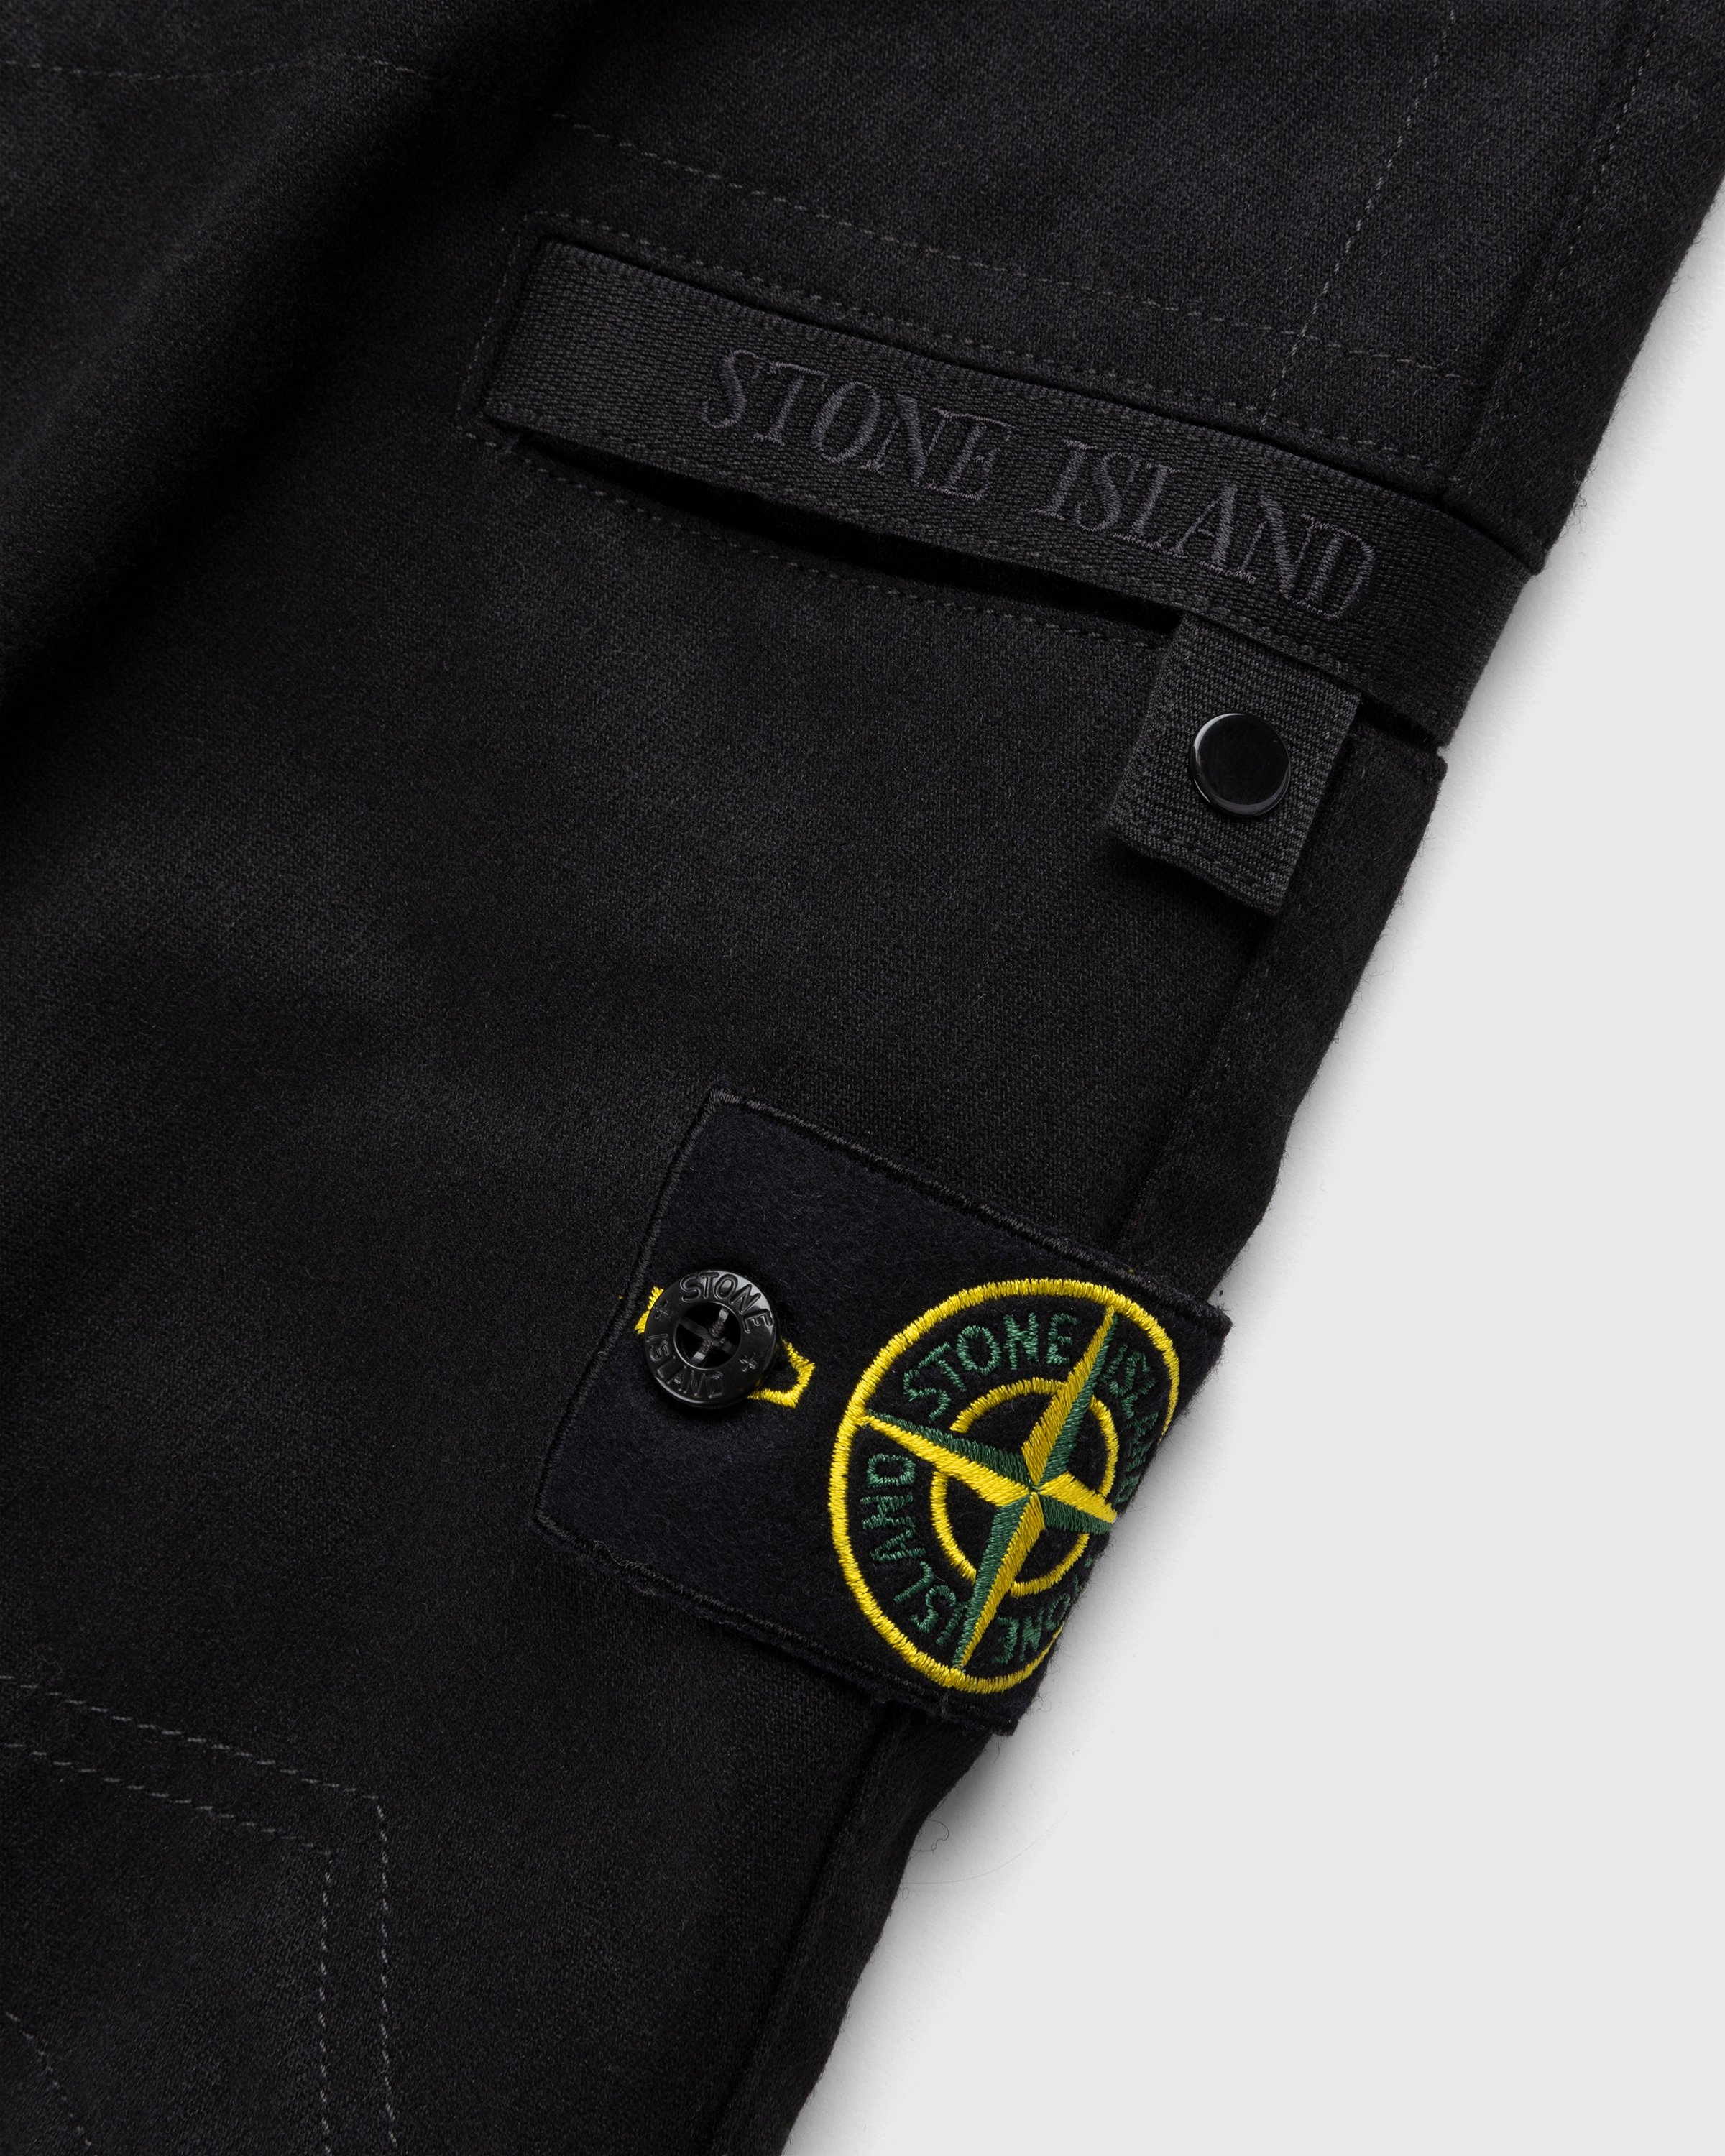 Stone Island - Wool-Nylon Cargo Pants Black - Clothing - Black - Image 6